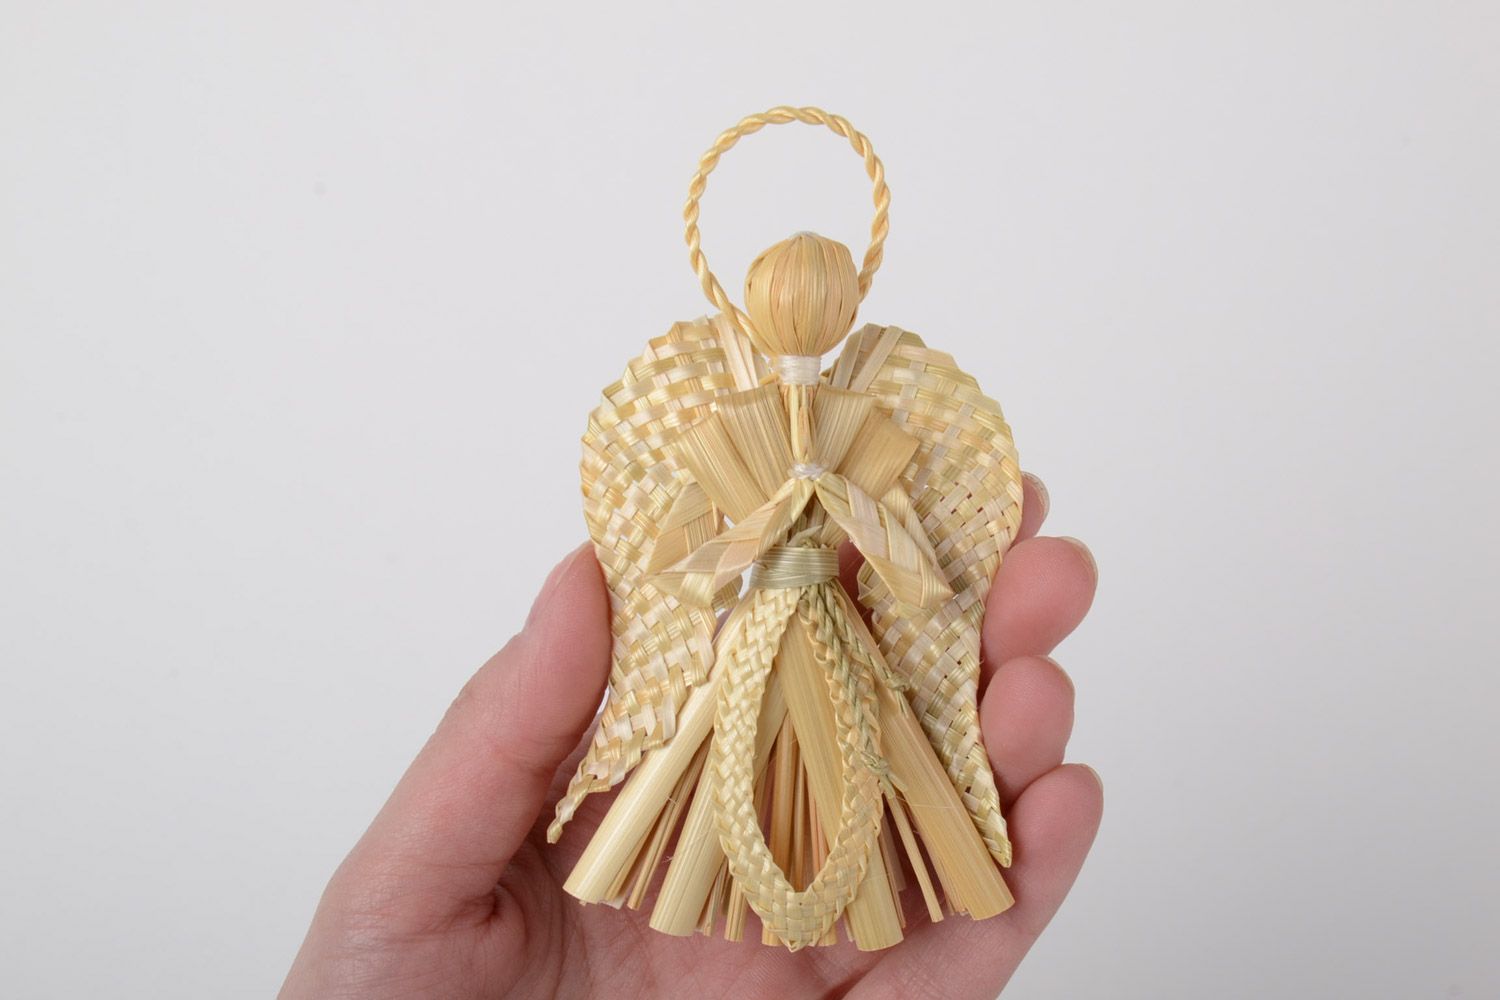 Ангел-хранитель из соломы плетеный вручную интерьерная подвеска в эко стиле фото 5